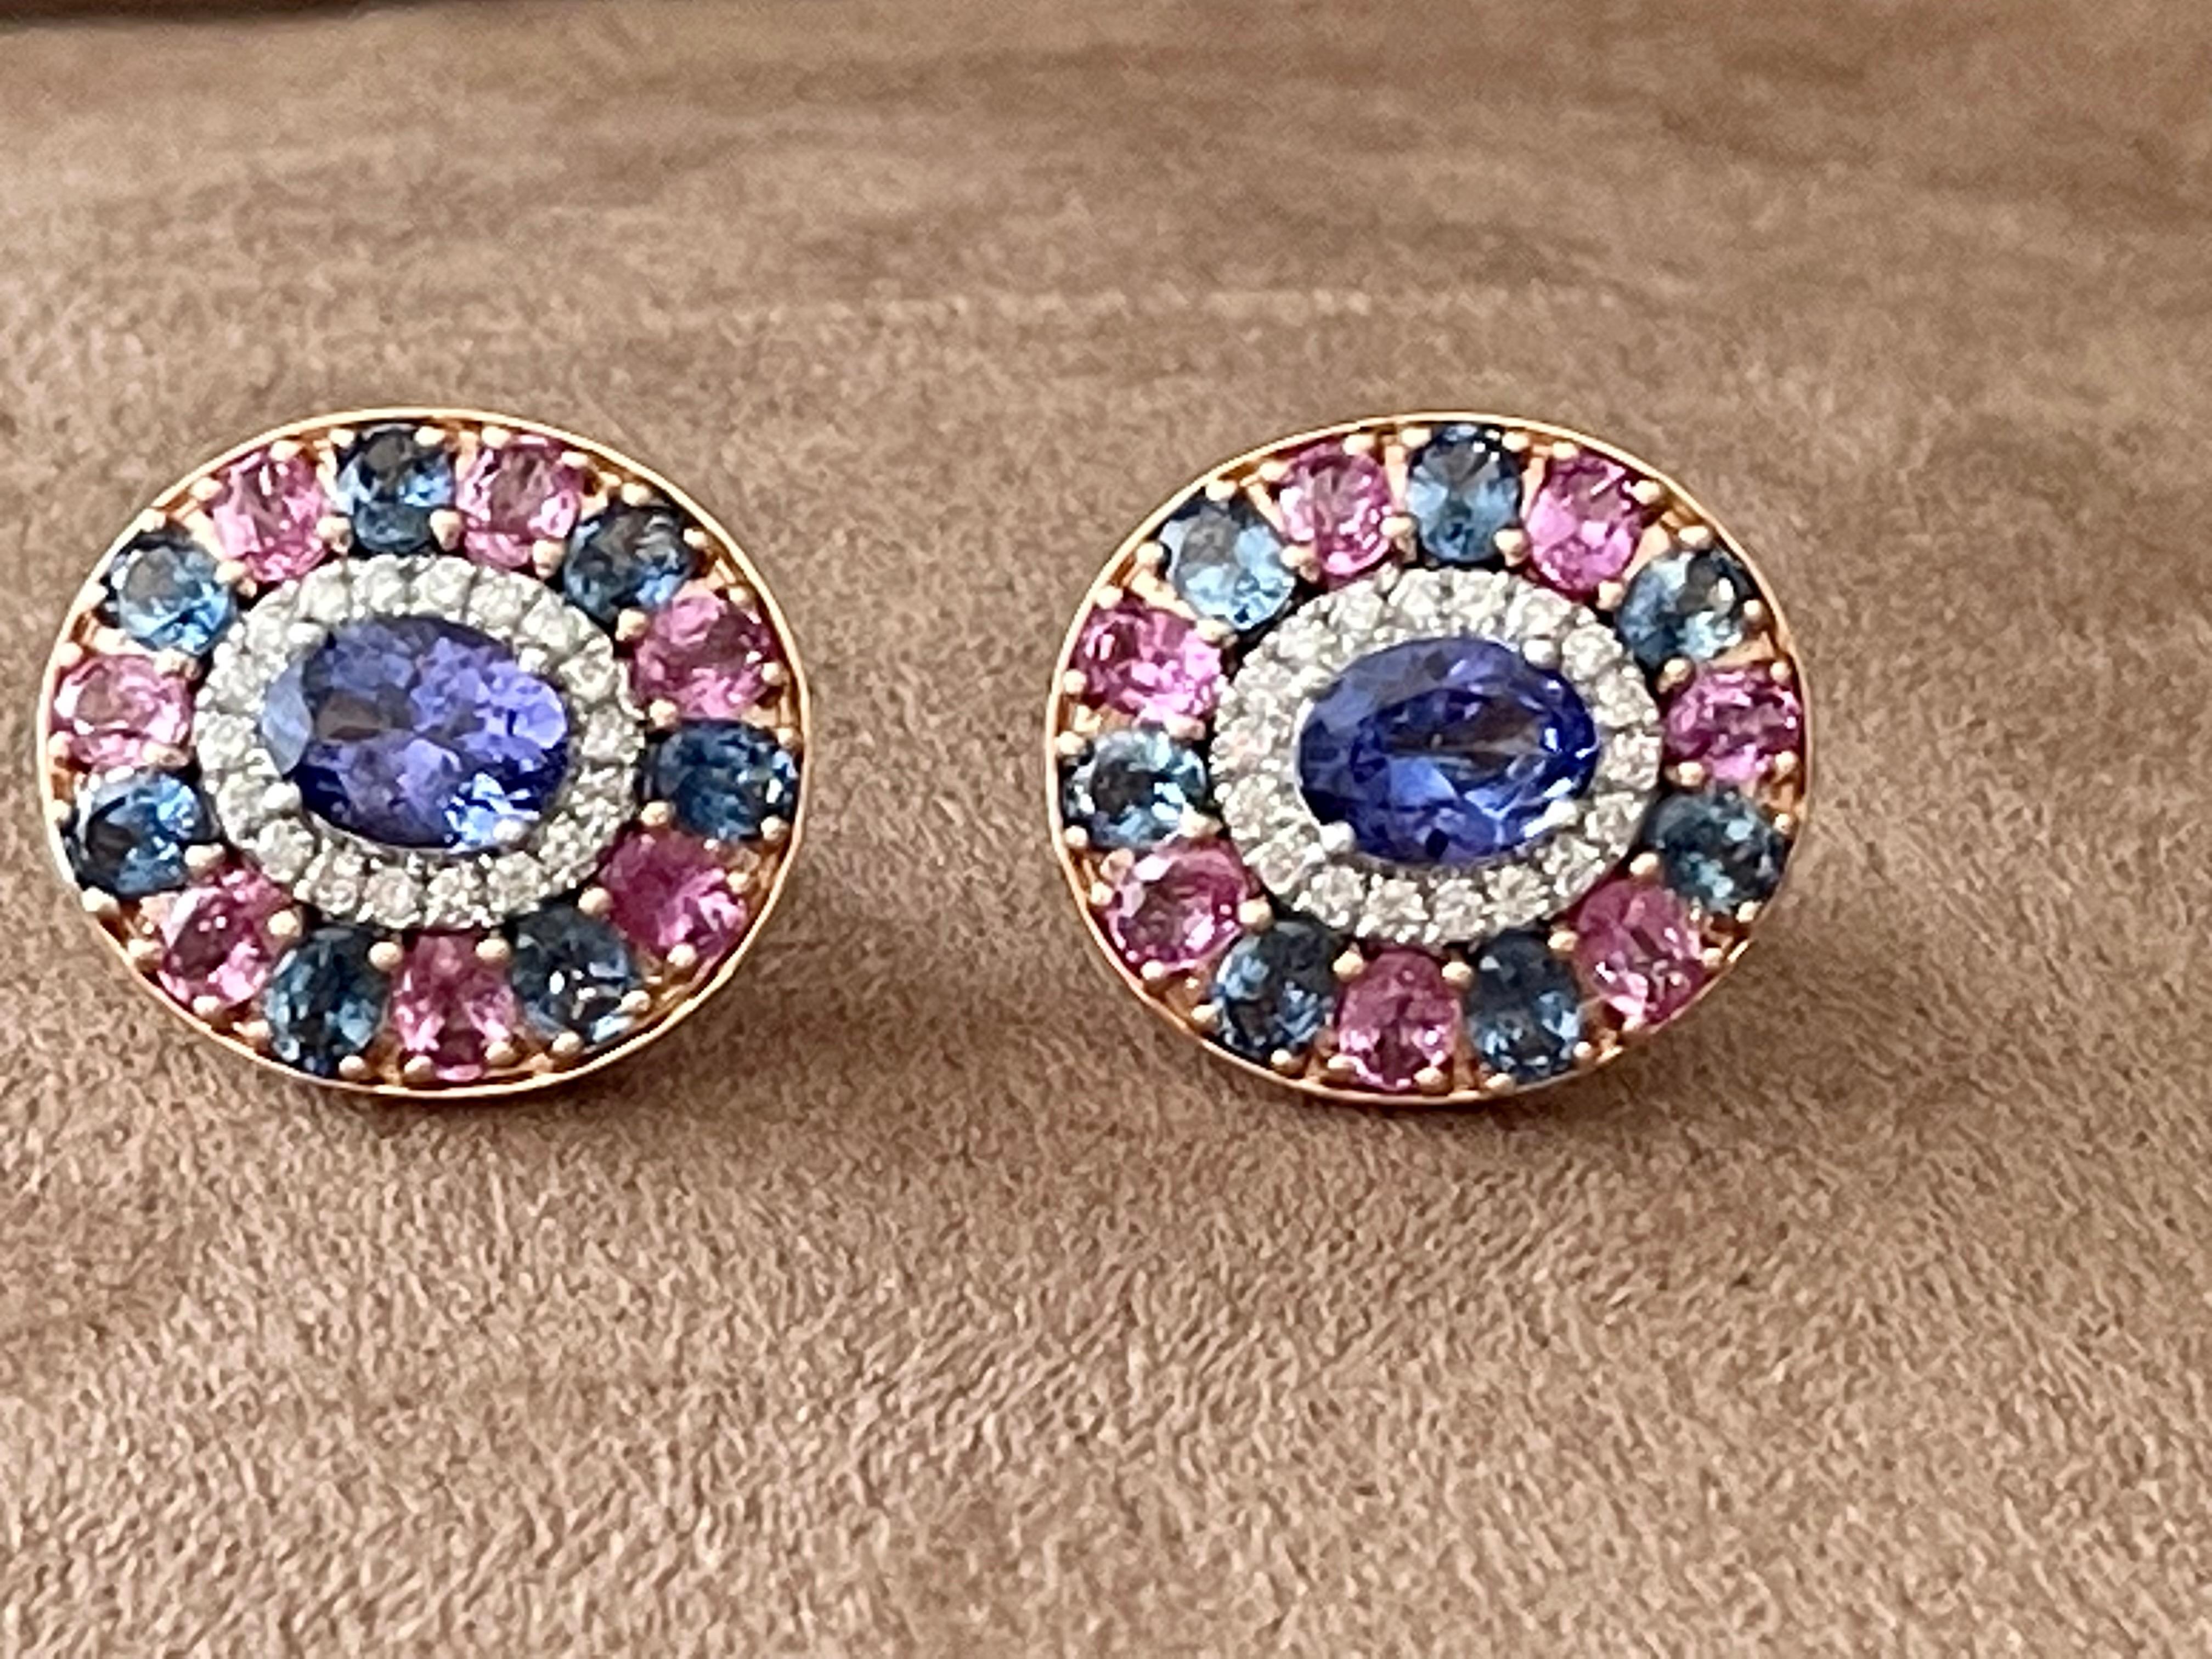 Eine wahrhaft atemberaubende Farbenpracht! Diese hübschen Ohrringe bestehen aus einem mehrfarbigen Cluster mit 2 ovalen Tansaniten von 2,51 ct, 14 blauen Saphiren von 3,521 ct, 36 Diamanten im Brillantschliff von 0,45 ct und 14 rosafarbenen Saphiren